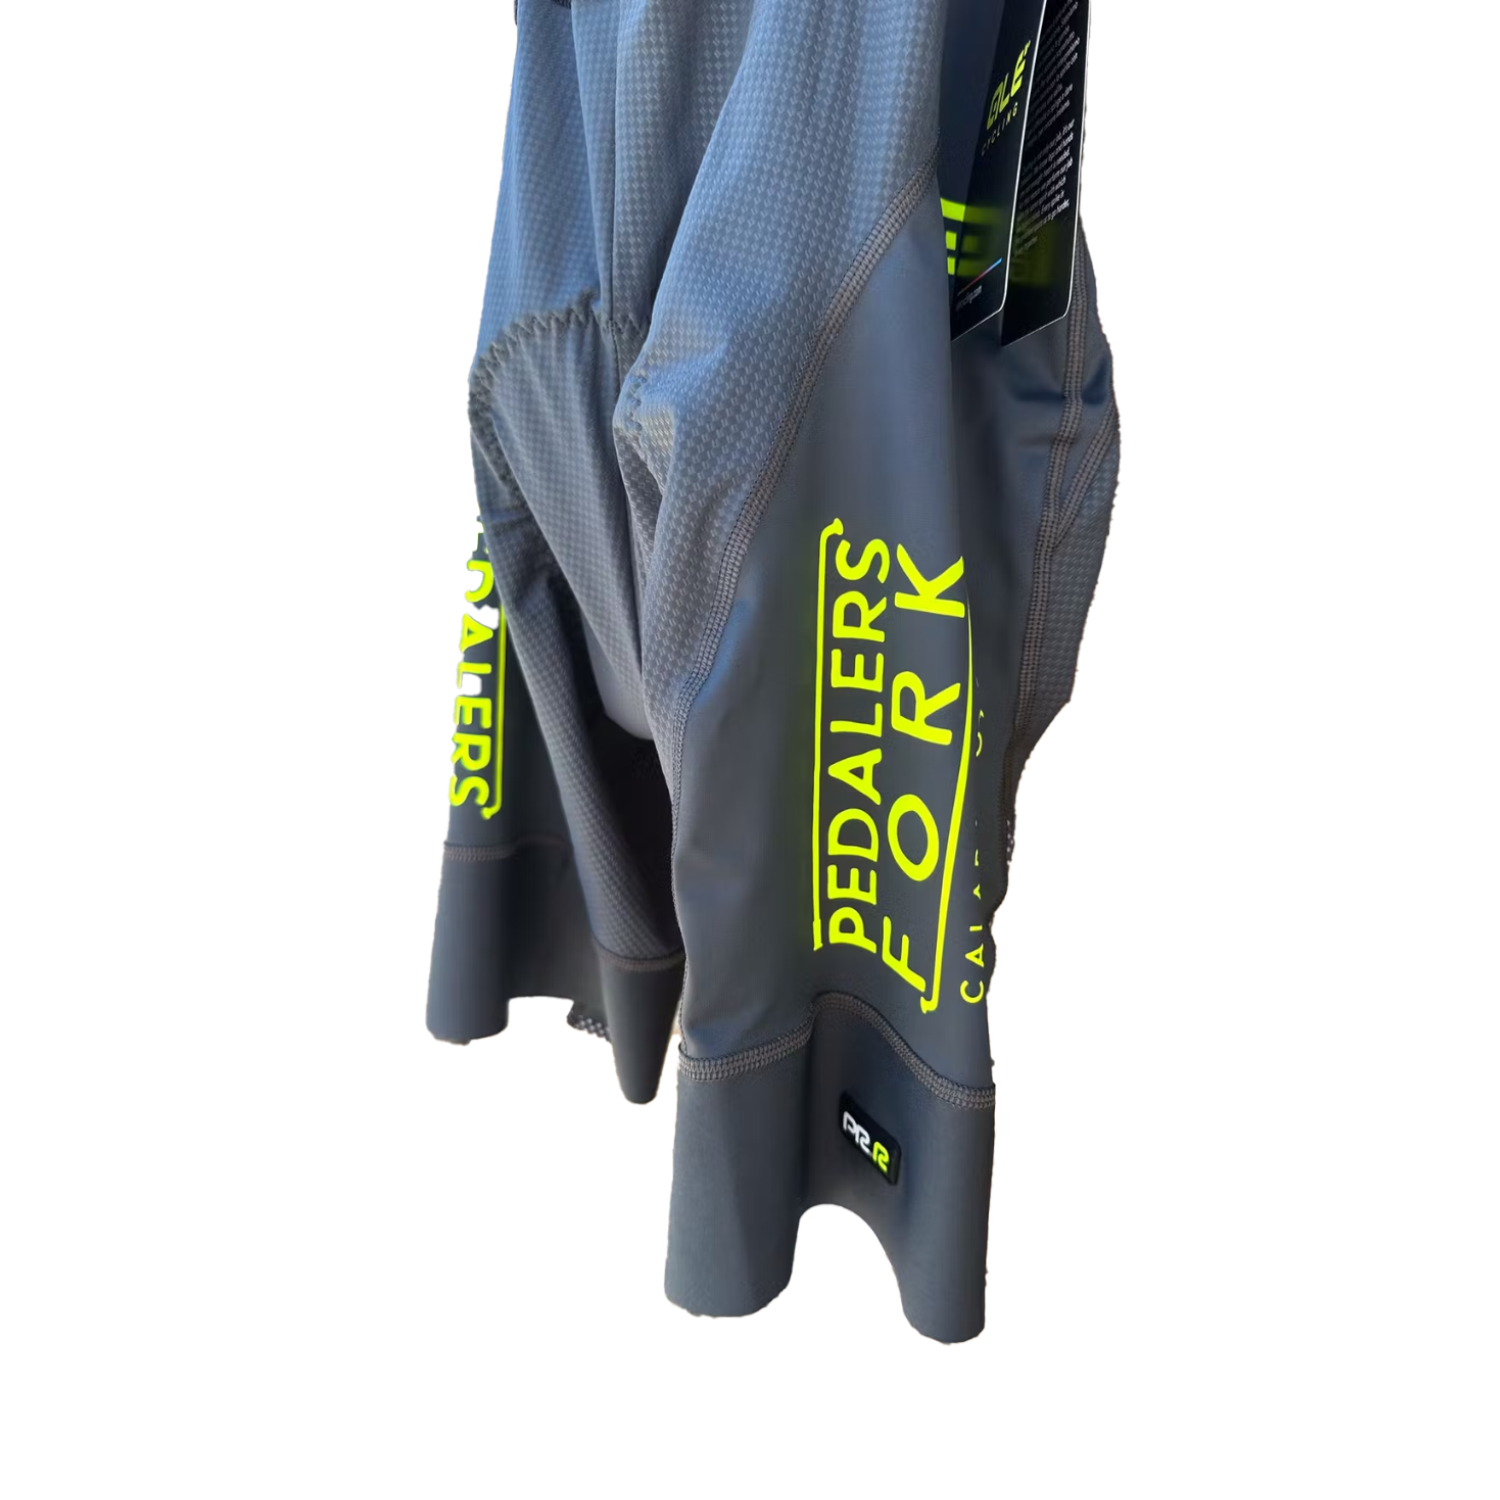 Grey biker shorts with Pedalers Fork logo on side